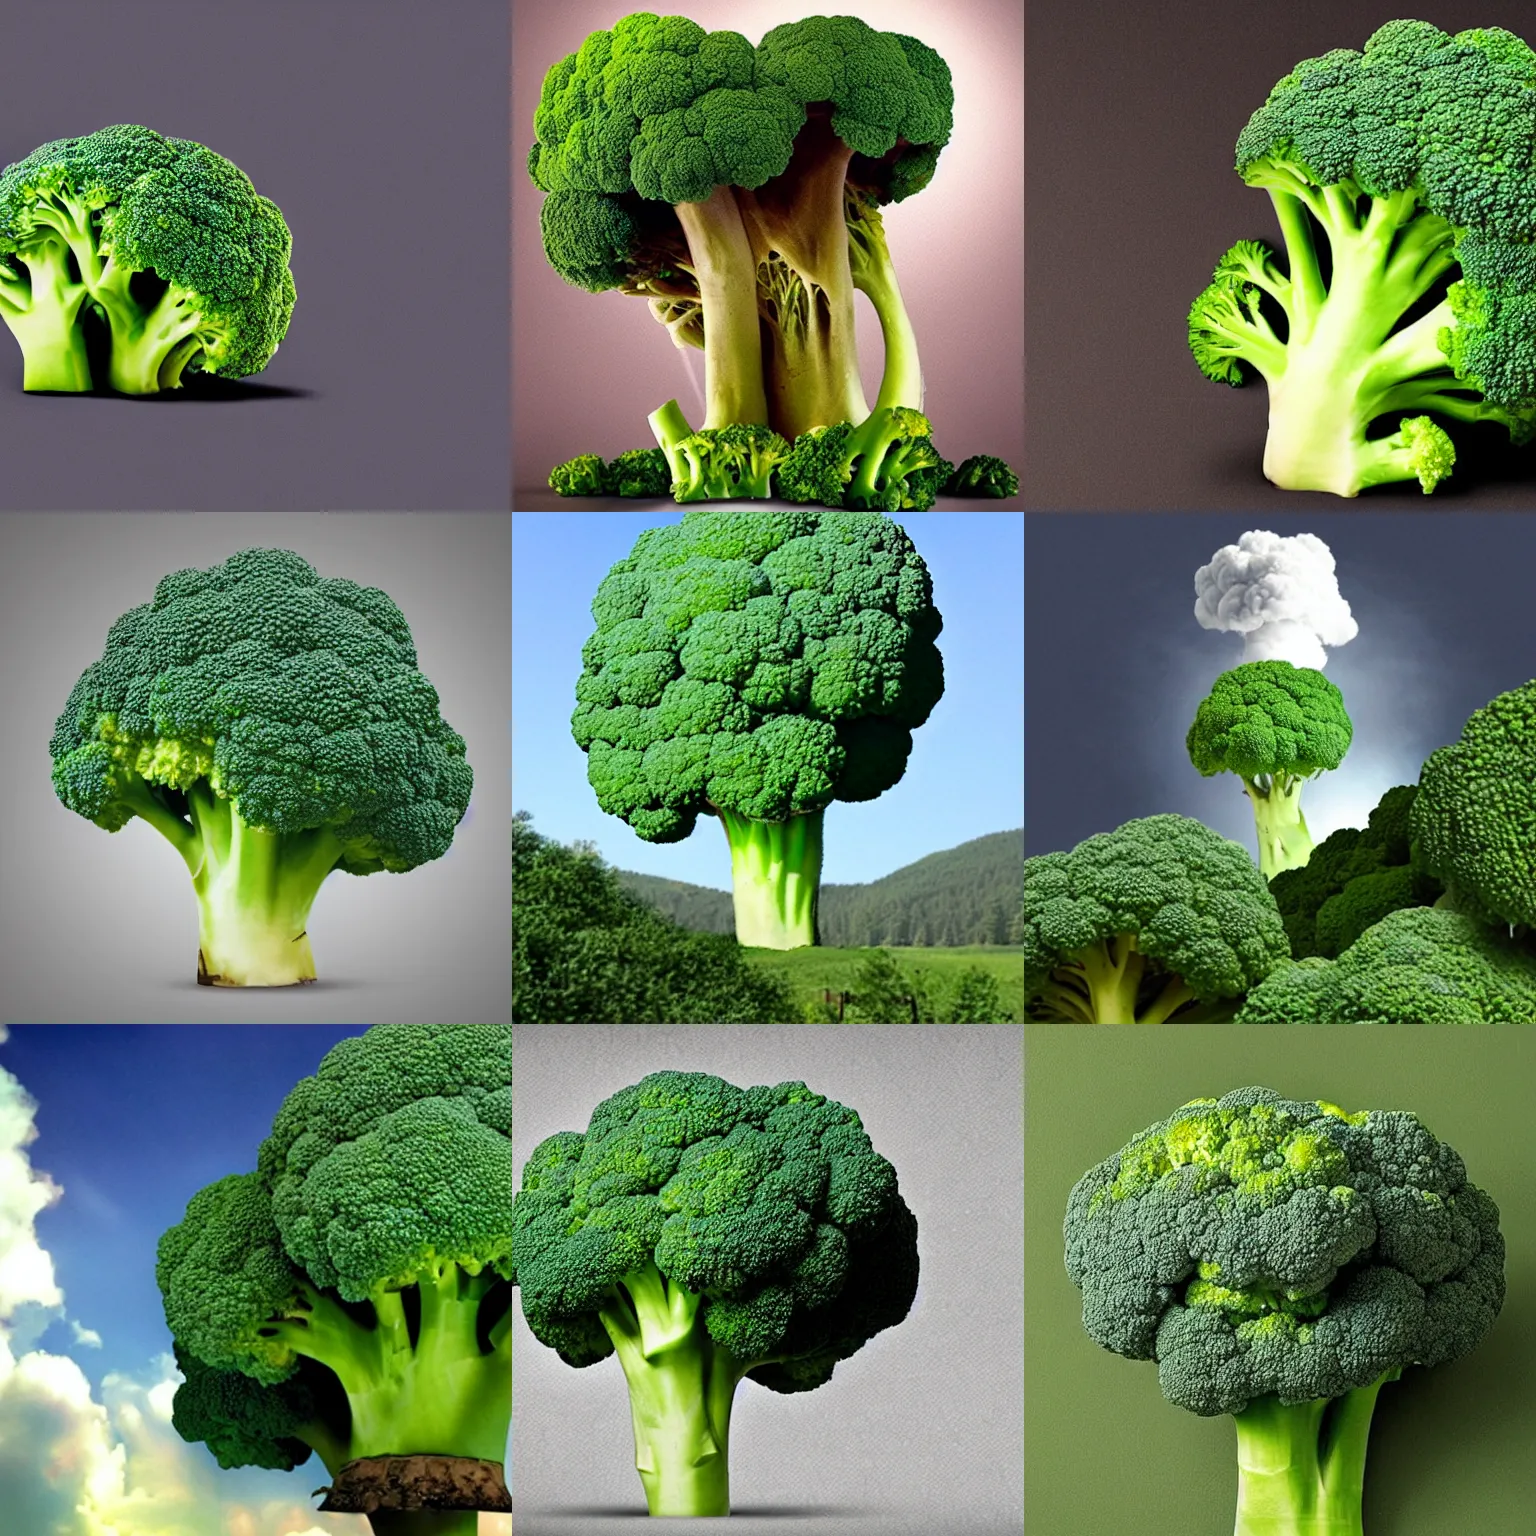 Prompt: Broccoli mushroom cloud